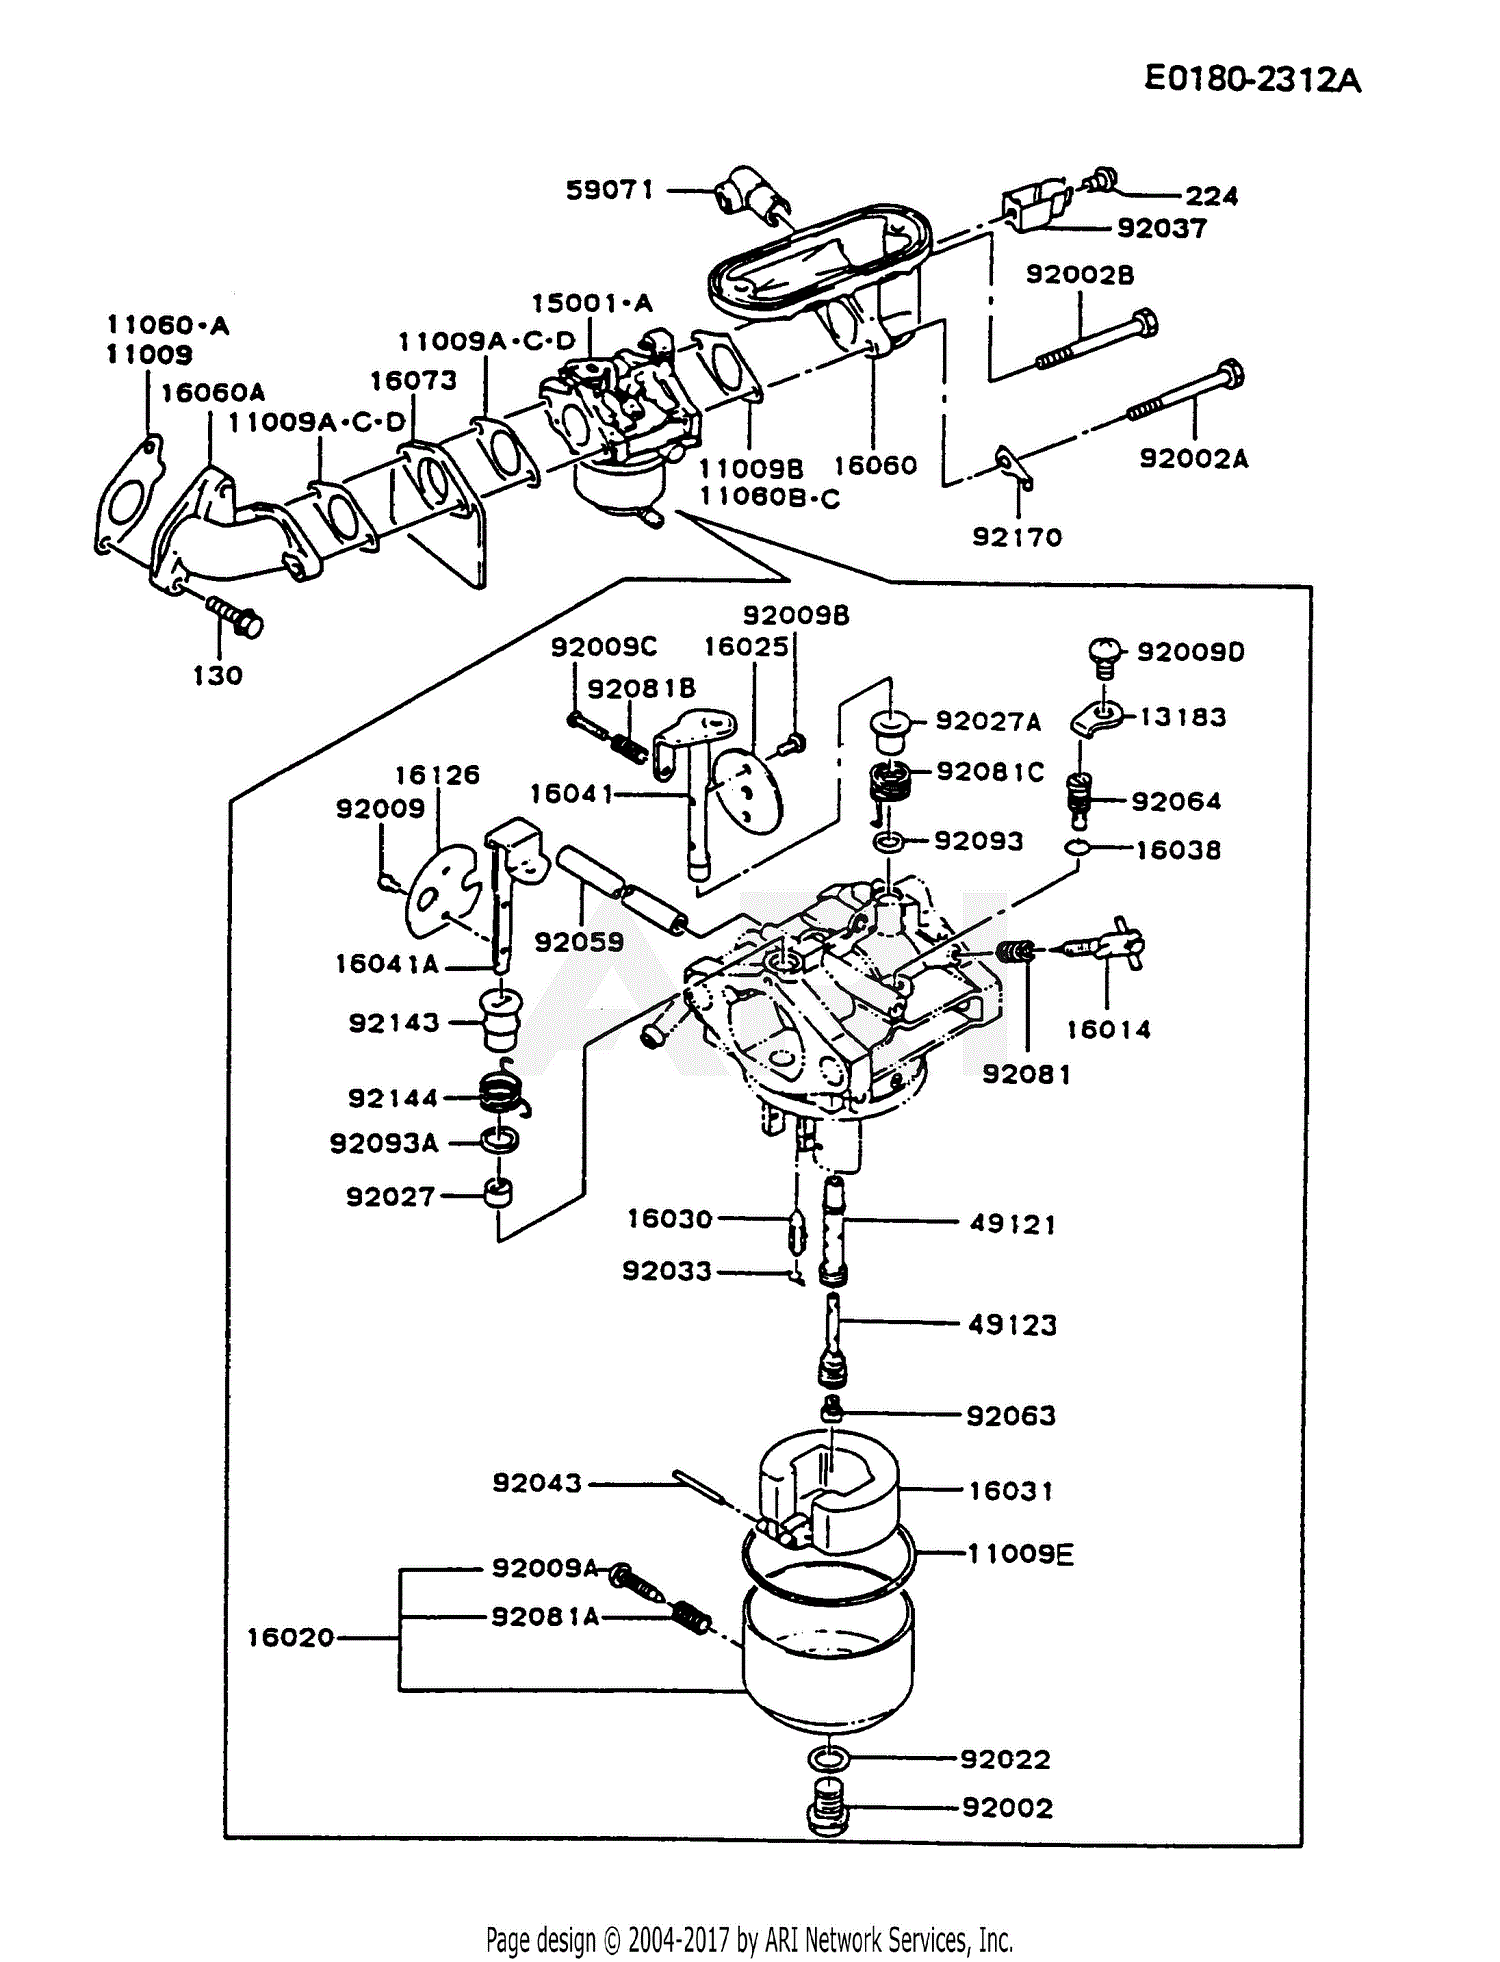 fb460v parts diagram